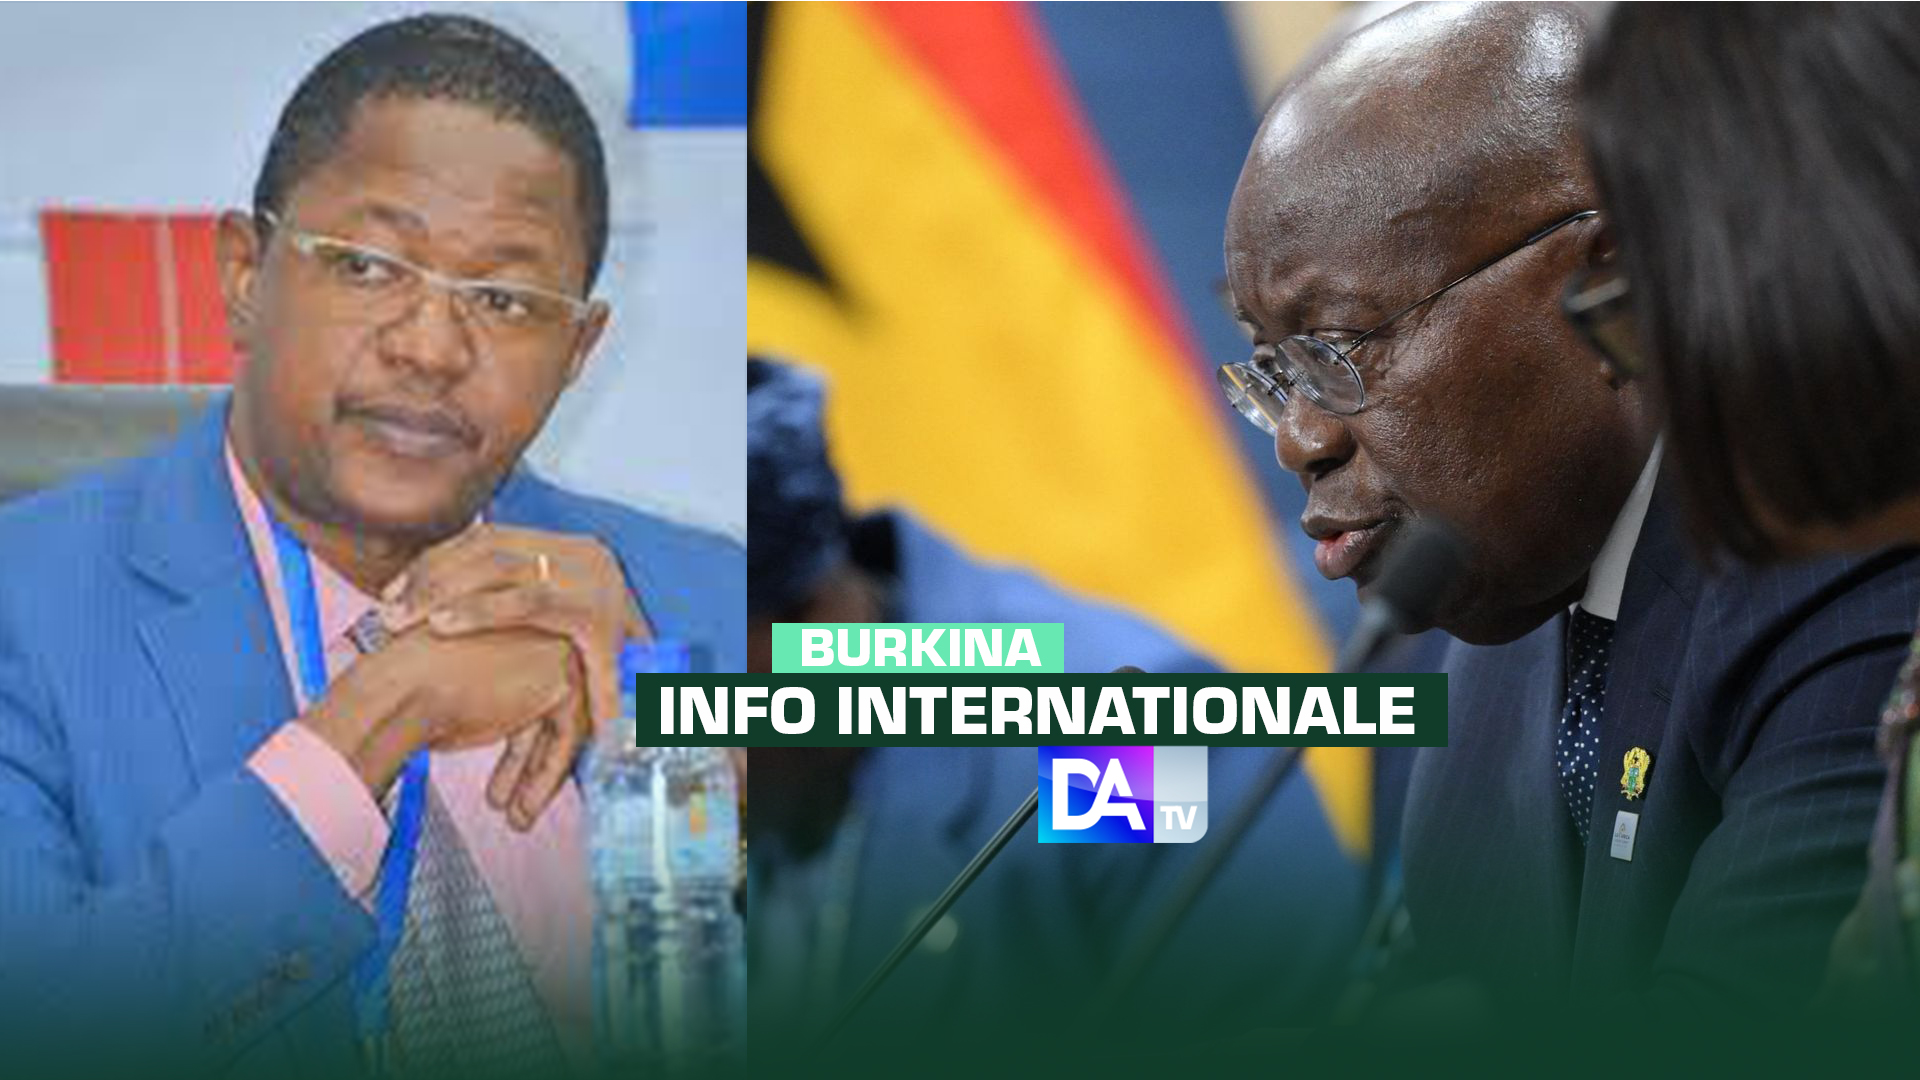 Le Burkina juge "très graves" les propos du président ghanéen sur la présence de Wagner